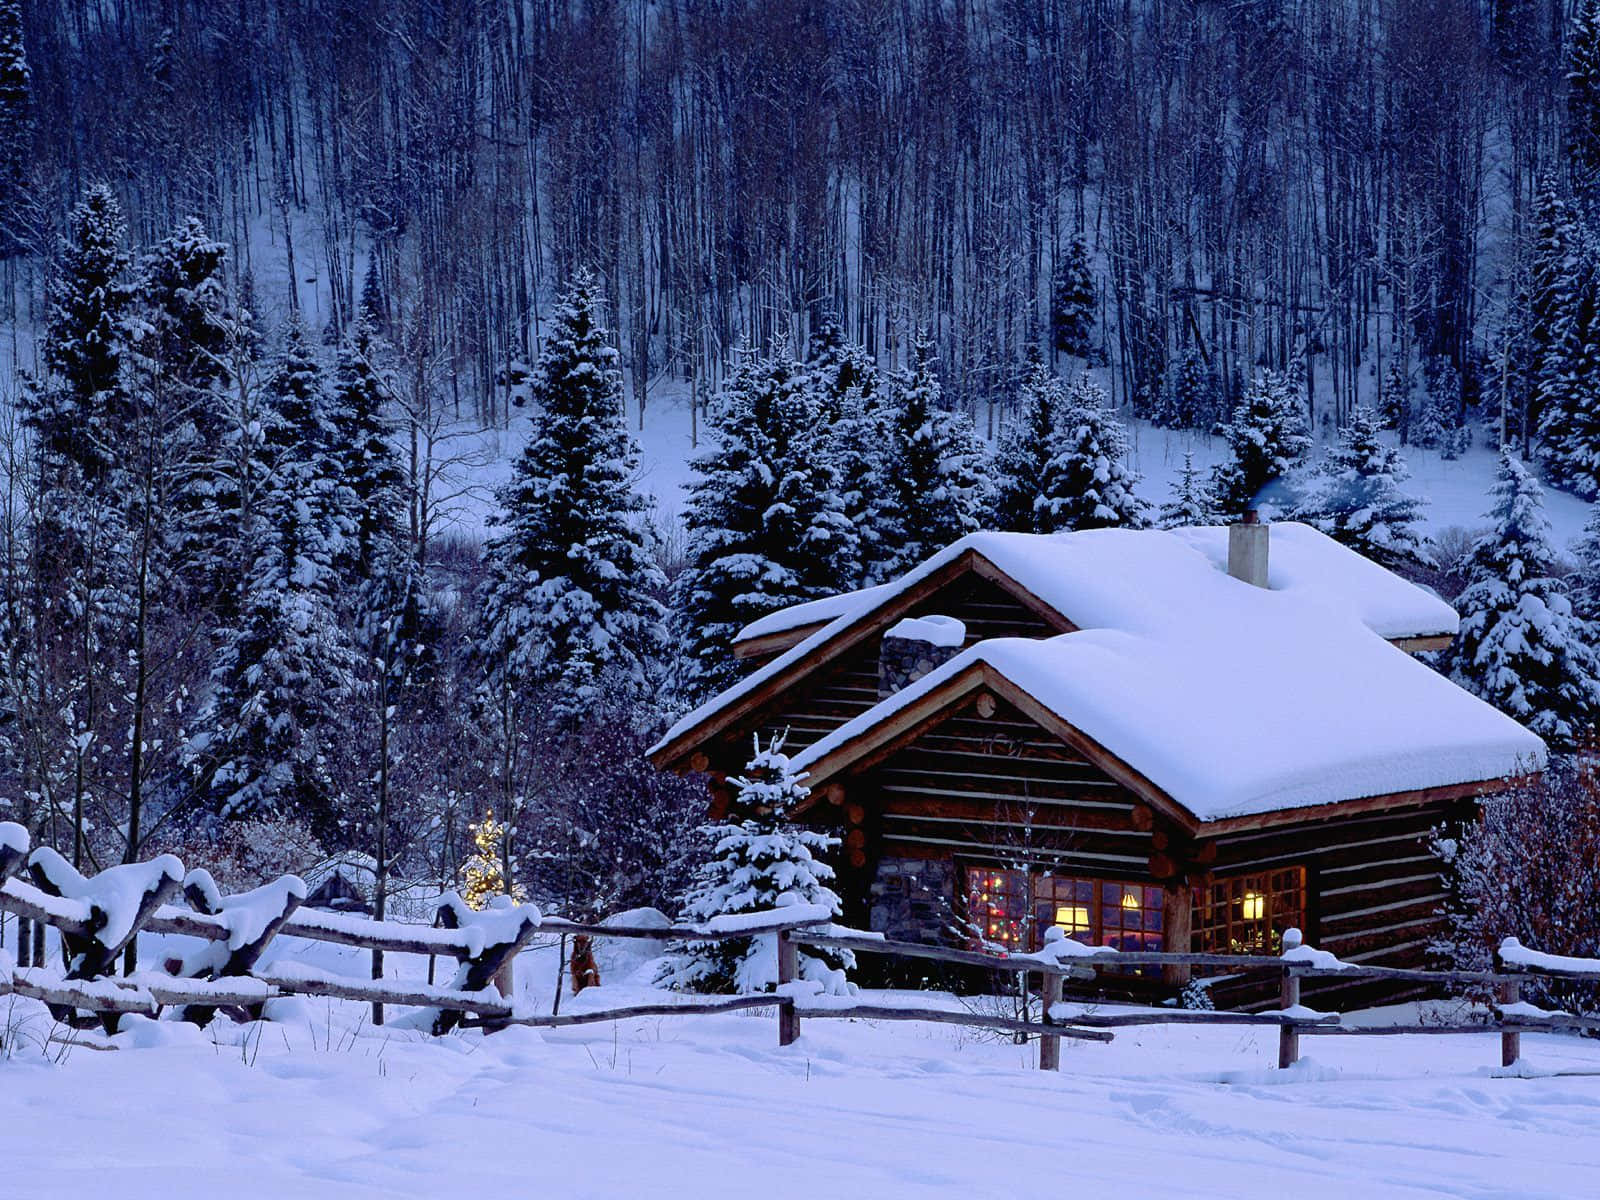 Breathtaking Winter Wonderland